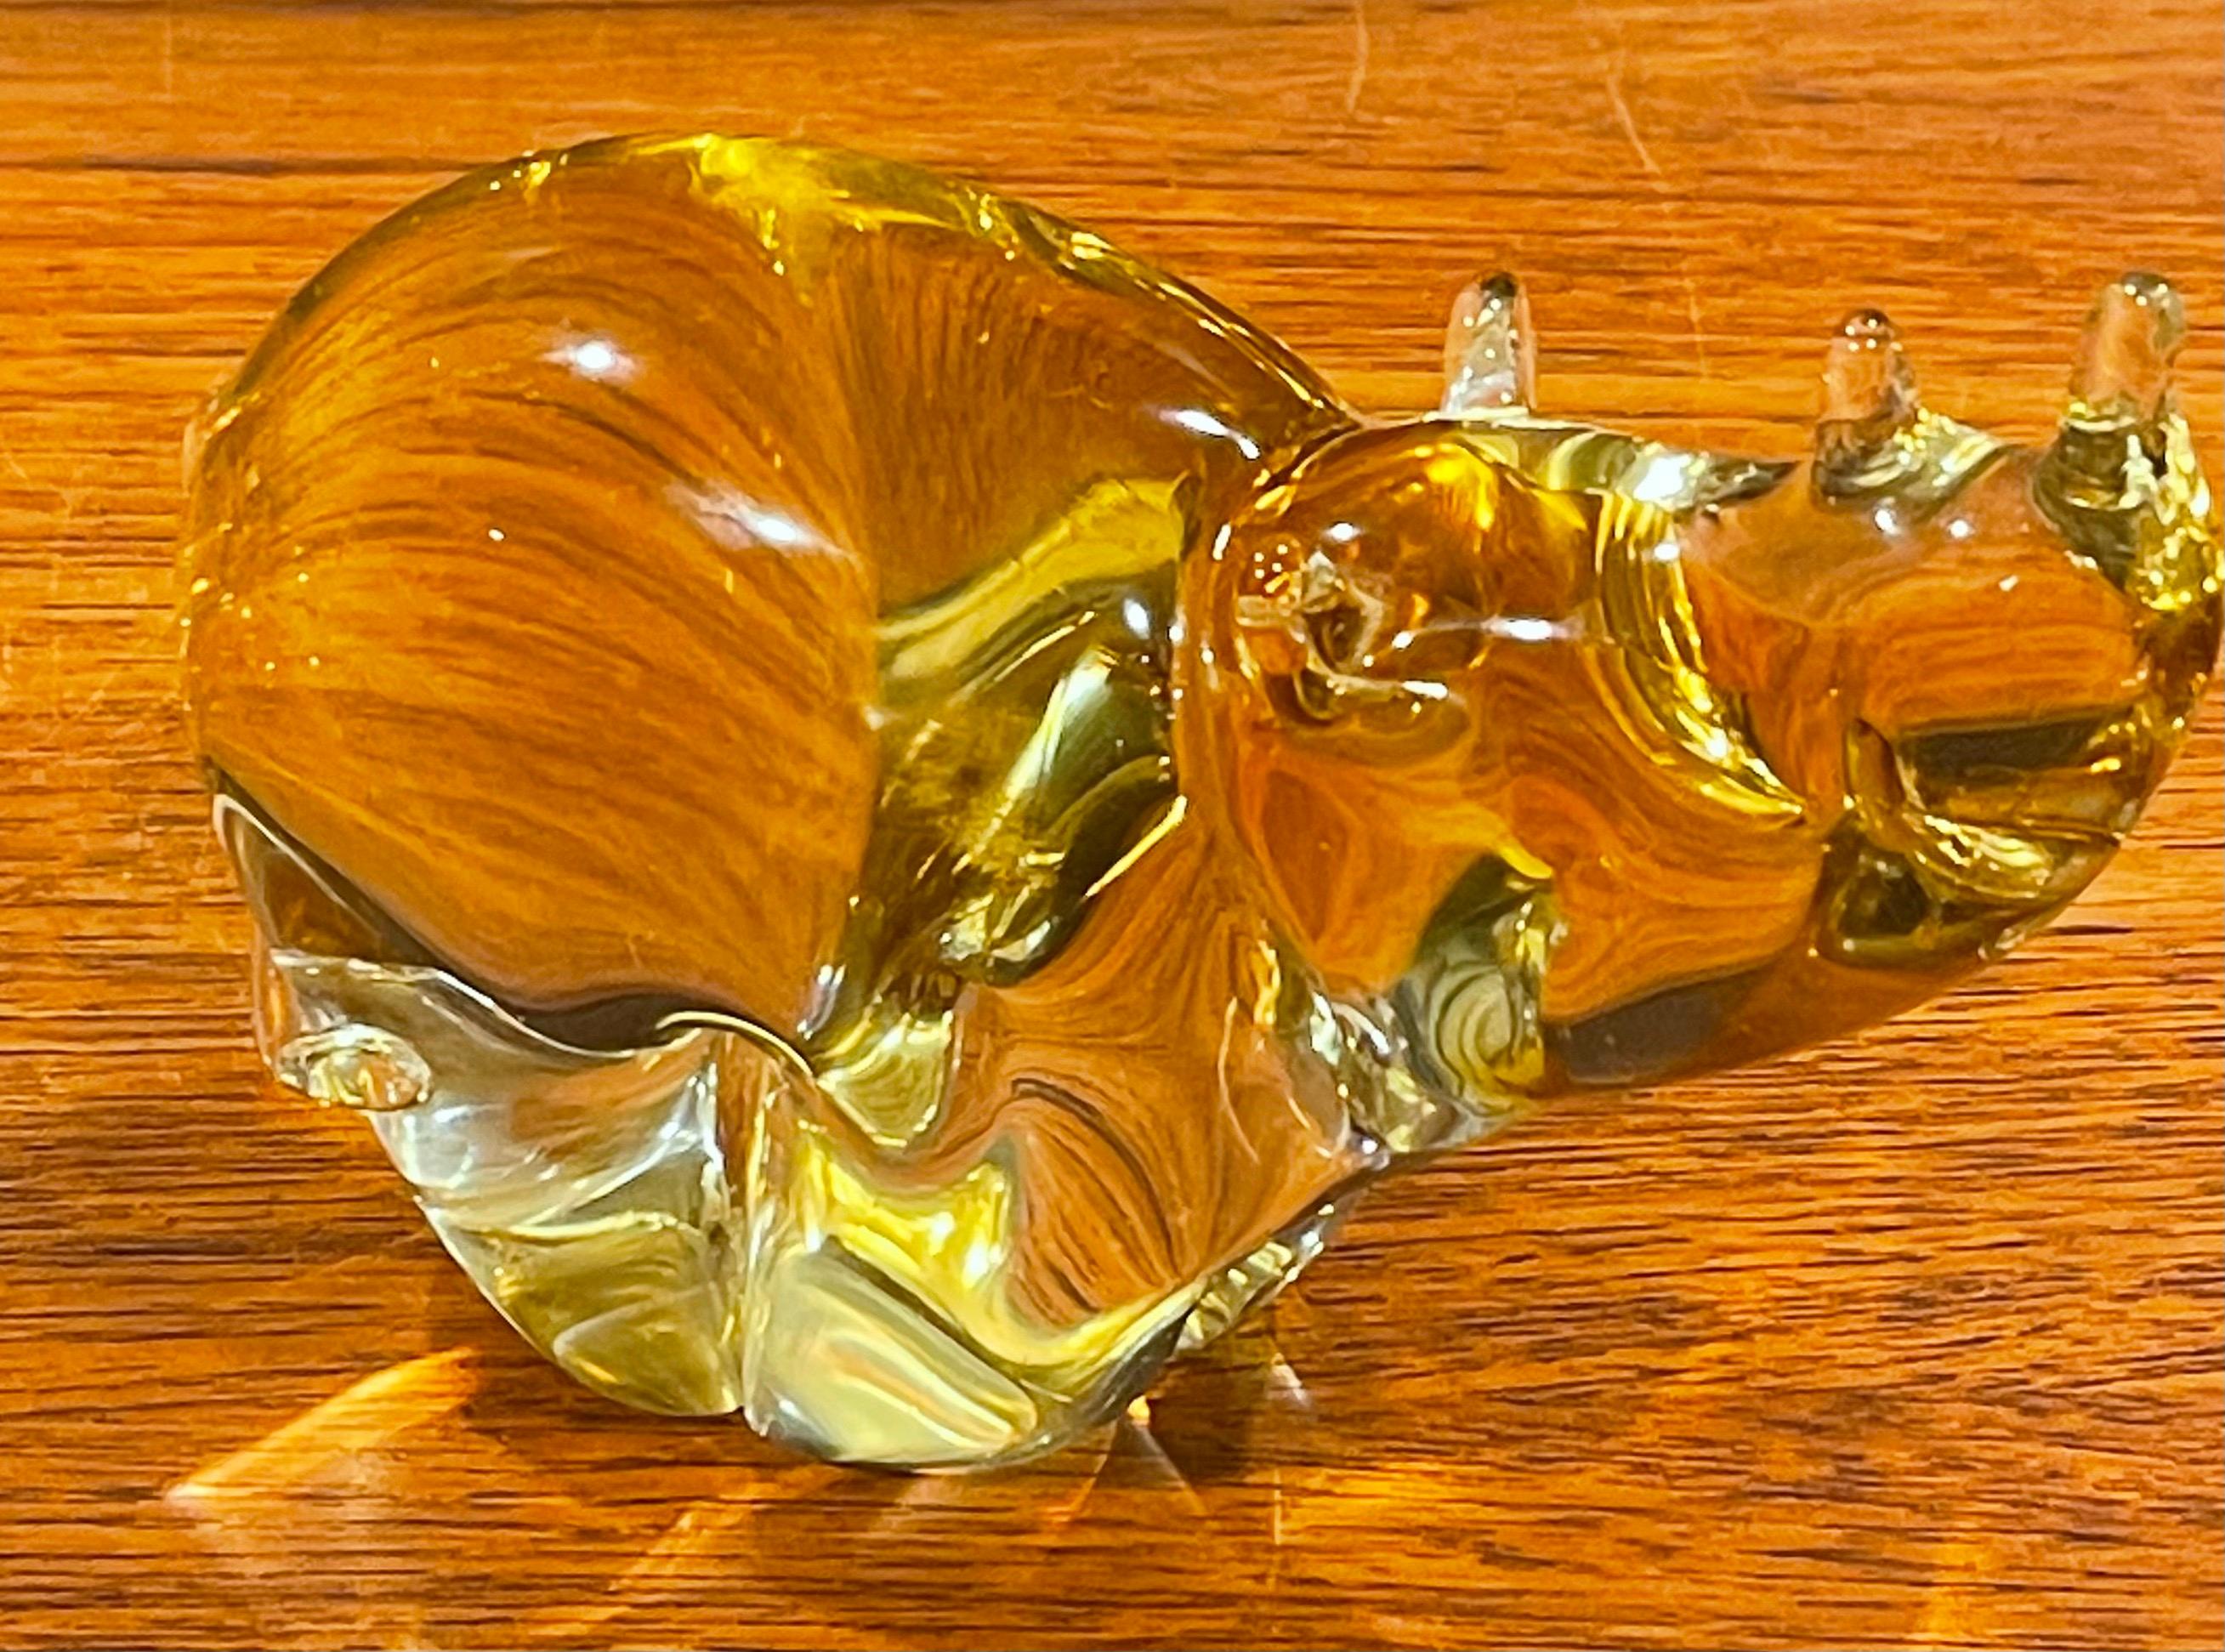 Magnifique sculpture de rhinocéros en verre d'art de Murano, datant des années 1980. La sculpture a une finition or clair et est en très bon état ; elle mesure 6,5 